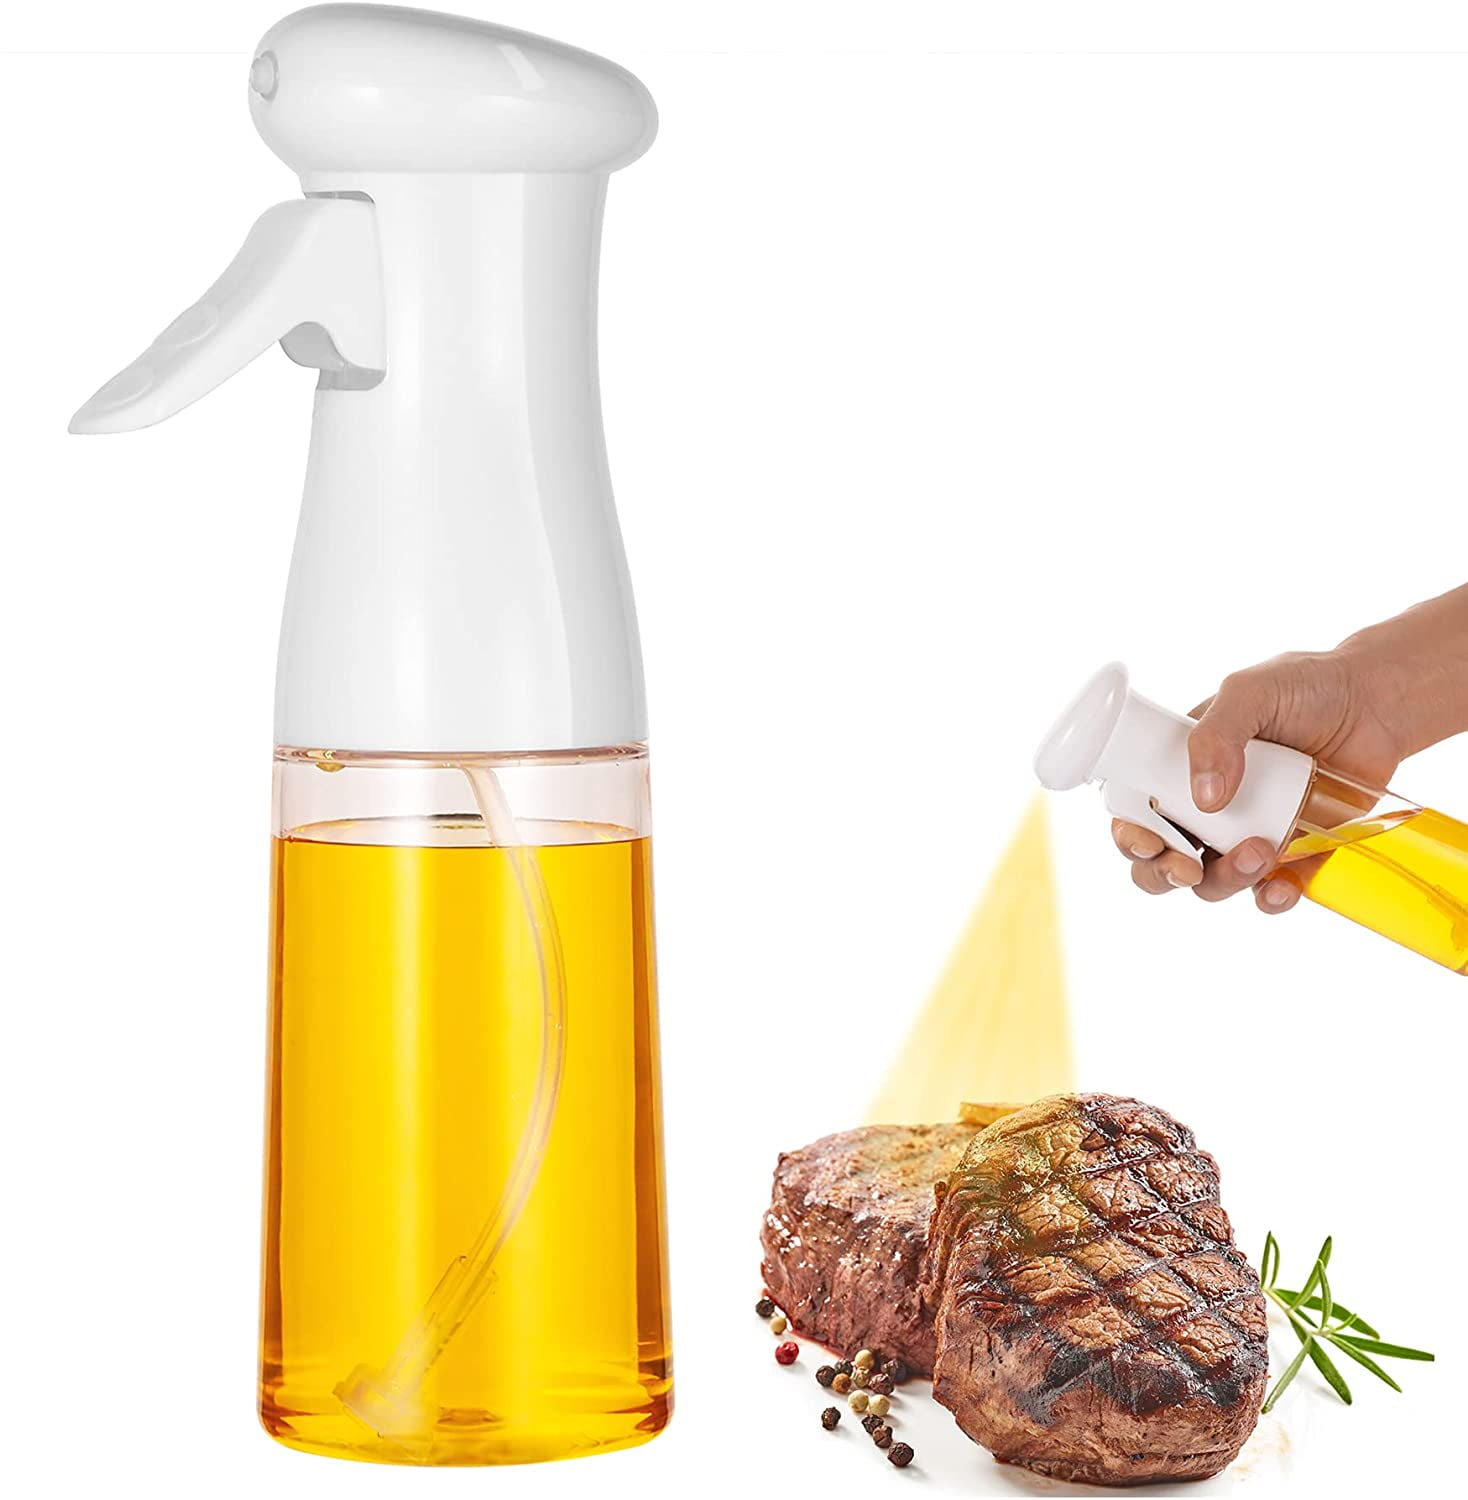 Olive Oil Sprayer For Cooking 7 oz/210 ml Refillable Oil Dispenser Bottle Mister